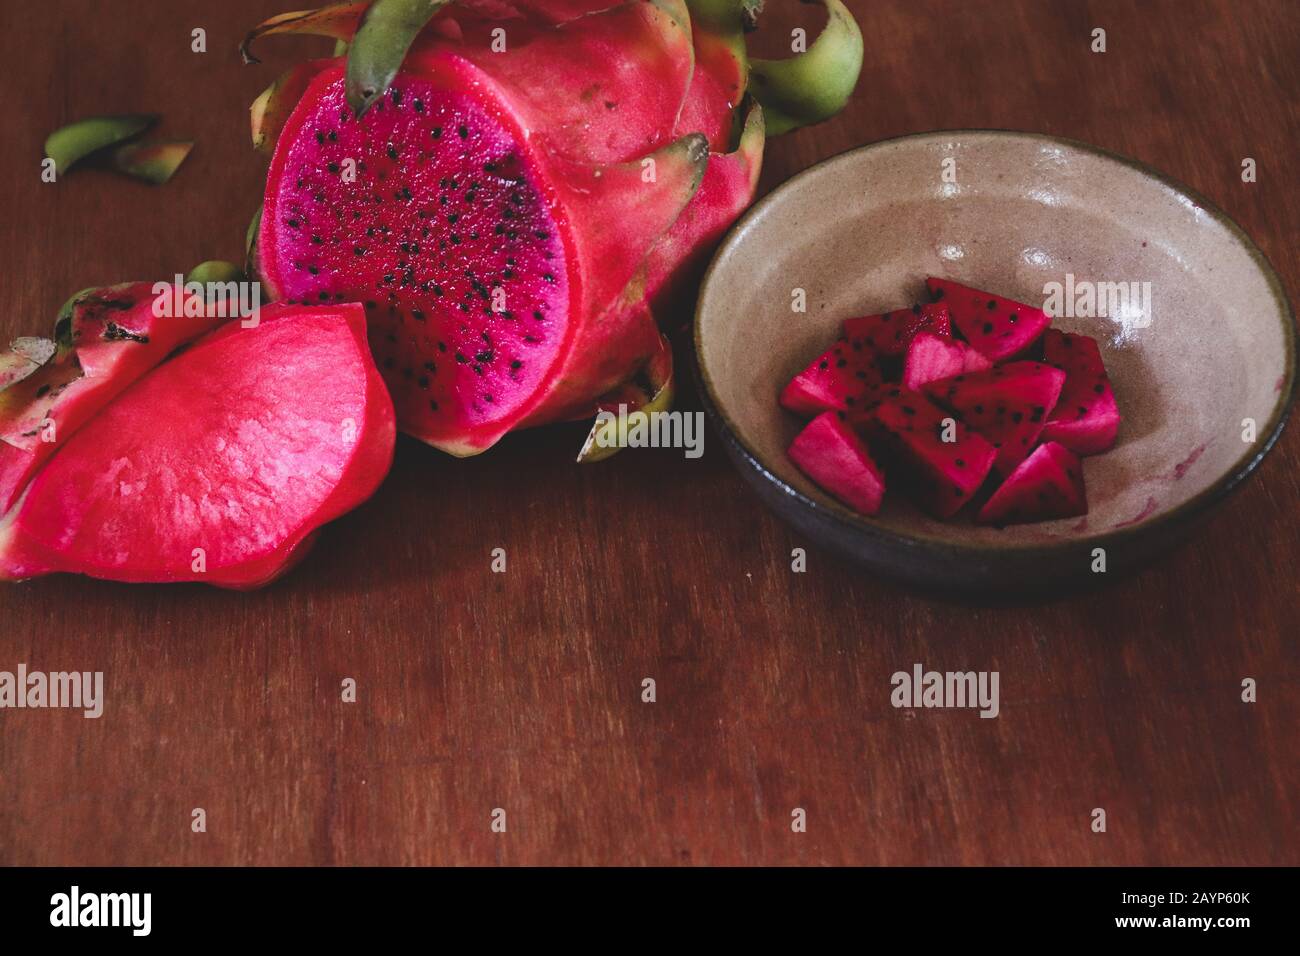 Rote Drachenfrucht in Scheiben vor Holzhintergrund, die das Konzept des Sommers, gesunde Ernährung, Veganismus und gesunden Lebensstils zeigt Stockfoto